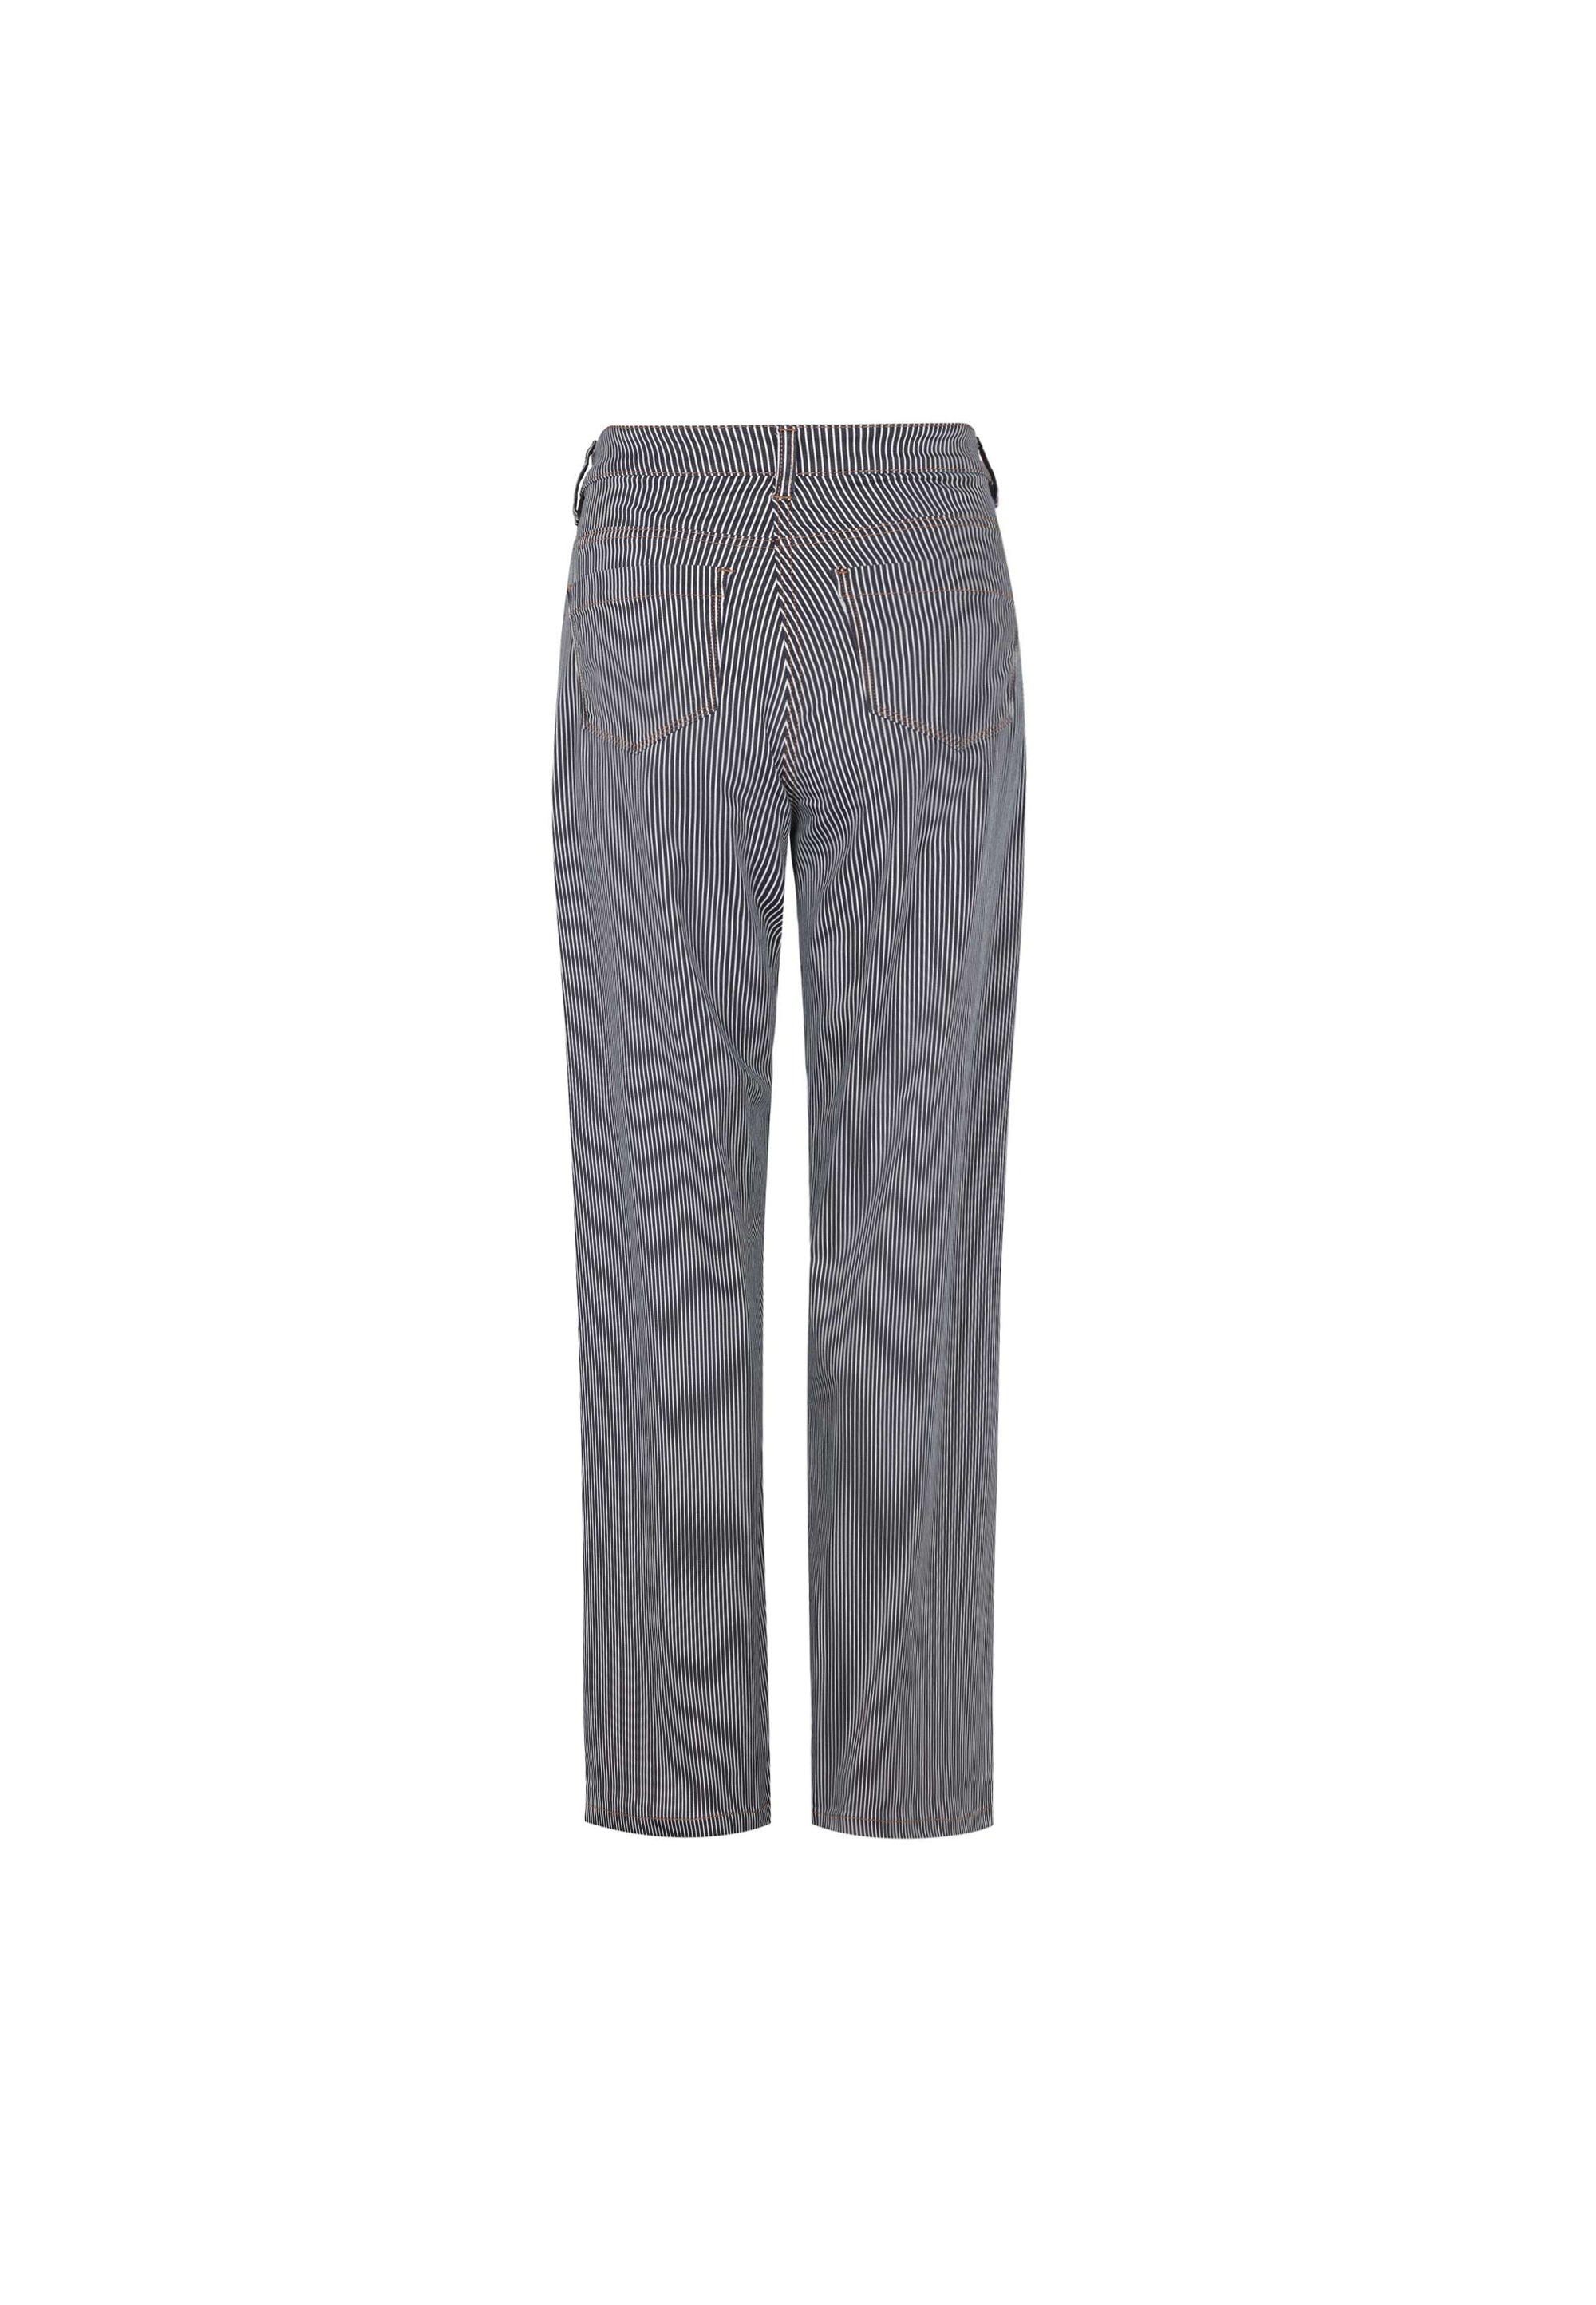 LAURIE Charlotte Regular - Medium Length Trousers REGULAR 49397 Blue Stripe